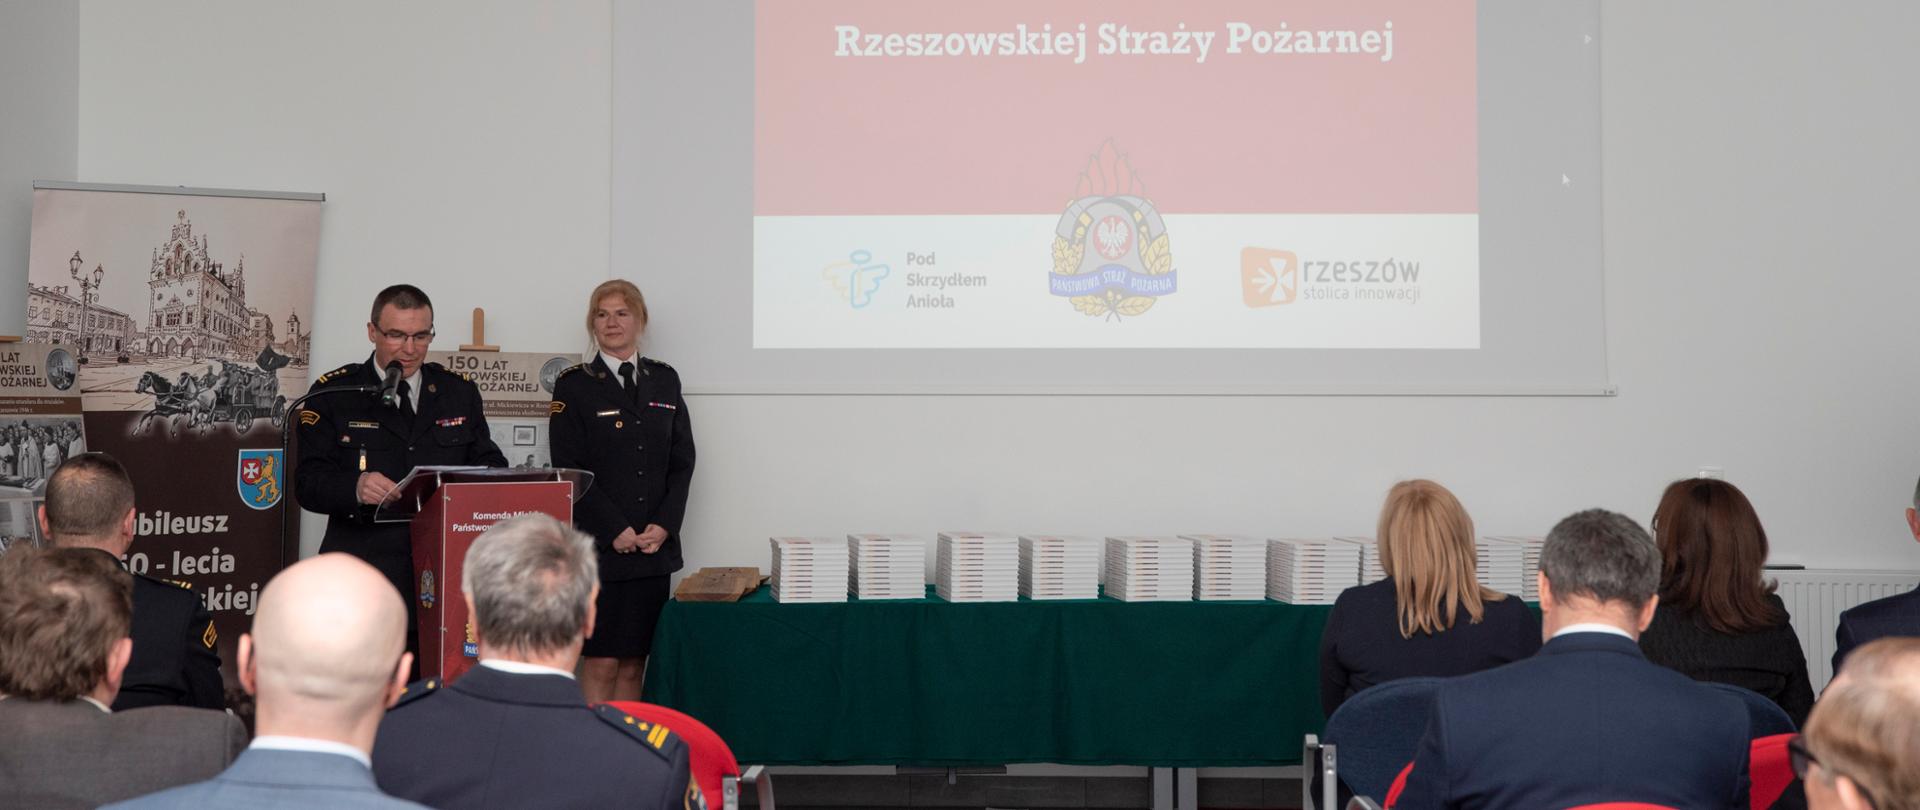 Zdjęcie przedstawia przemówienie komendanta miejskiego PSP w Rzeszowie st. bryg. Tomasza Barana stojącego przy mównicy. Na zdjęciu widoczni są słuchacze, prezentowane książki oraz na ścianie wyświetla się slajd "150 lat Rzeszowskiej Straży Pożarnej"